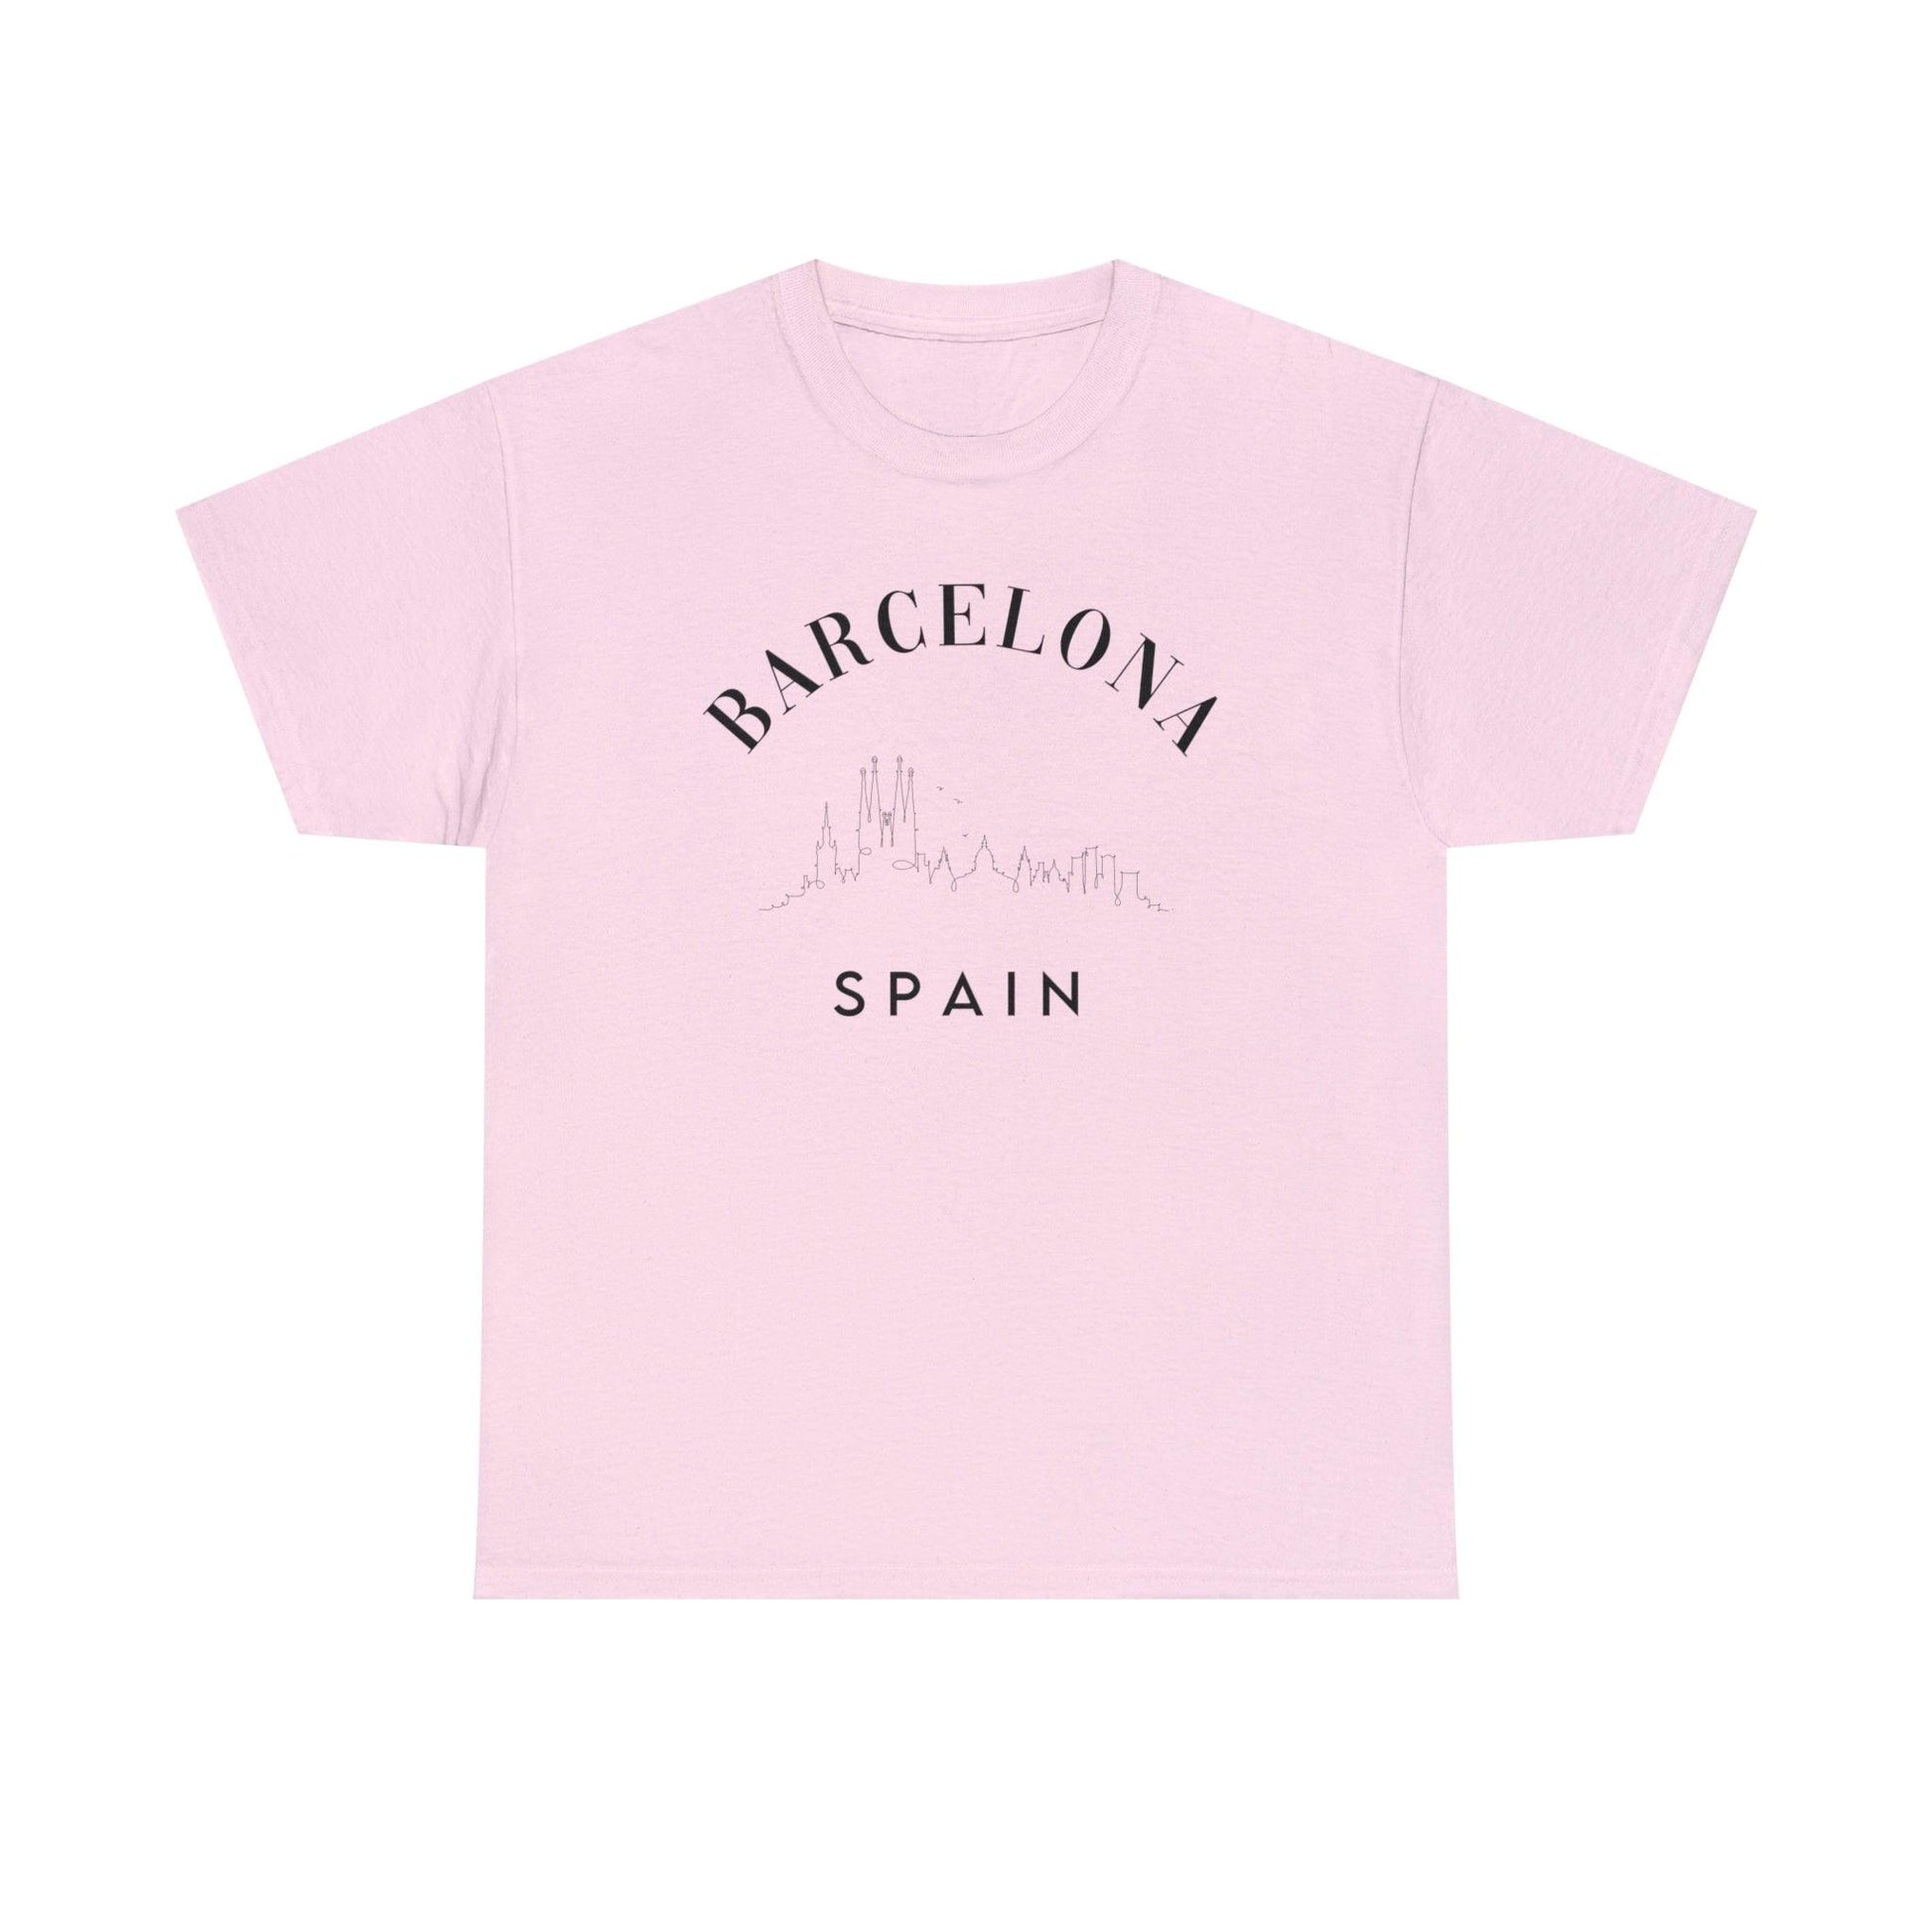 Barcelona Spain Shirt - BentleyBlueCo